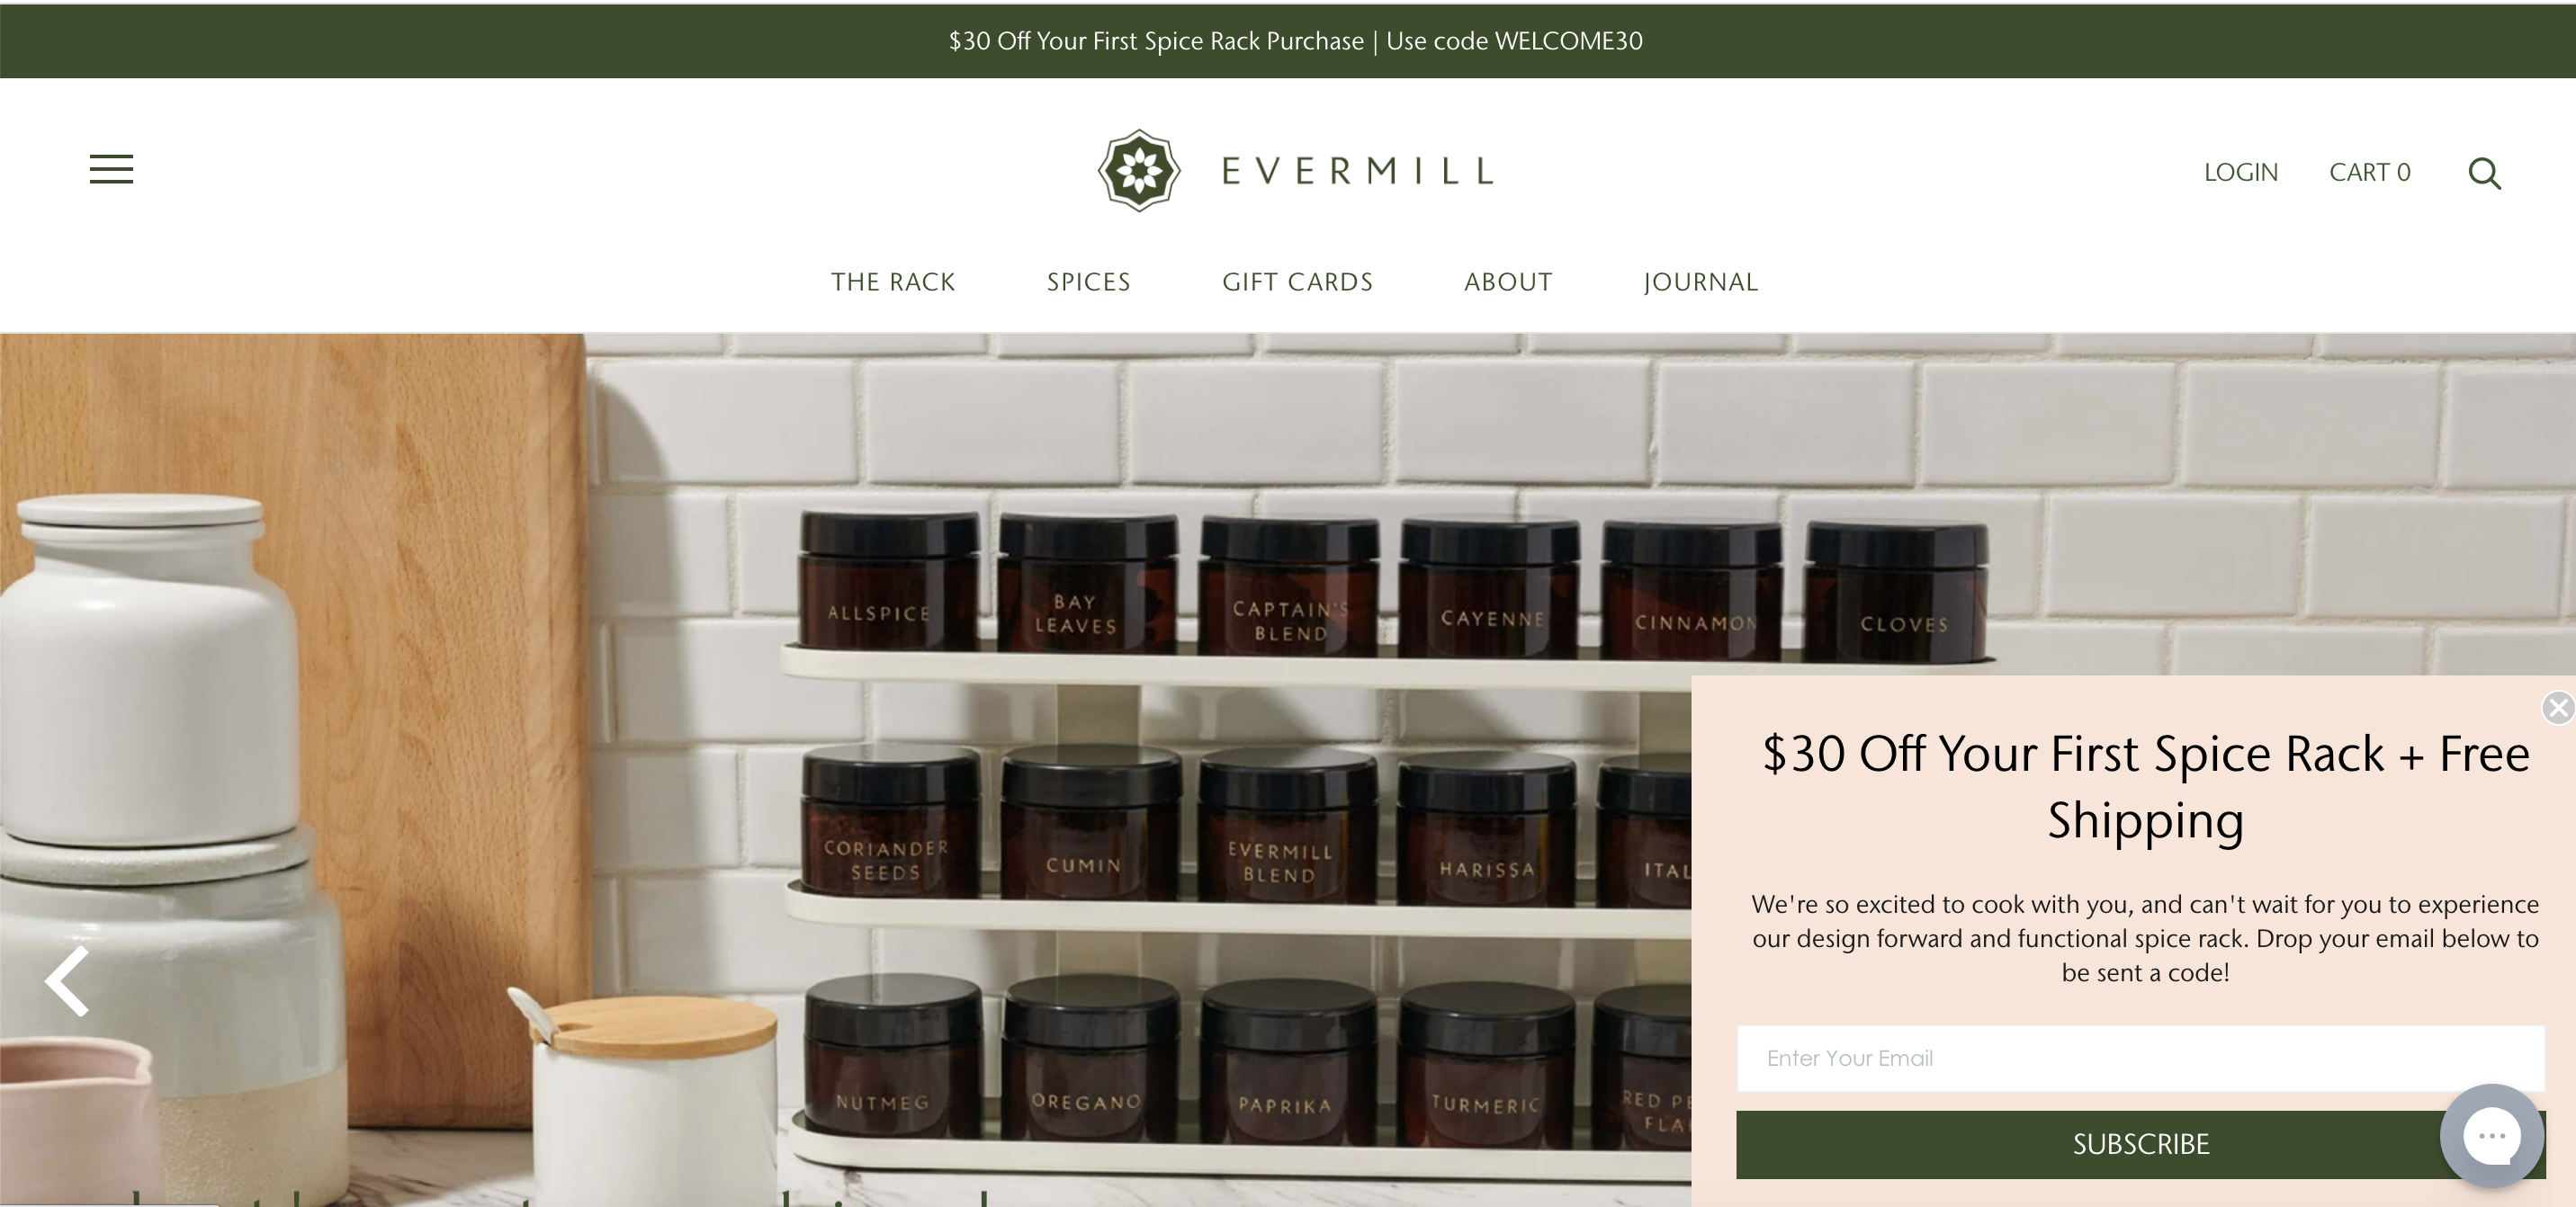 Screenshot from Evermill's website